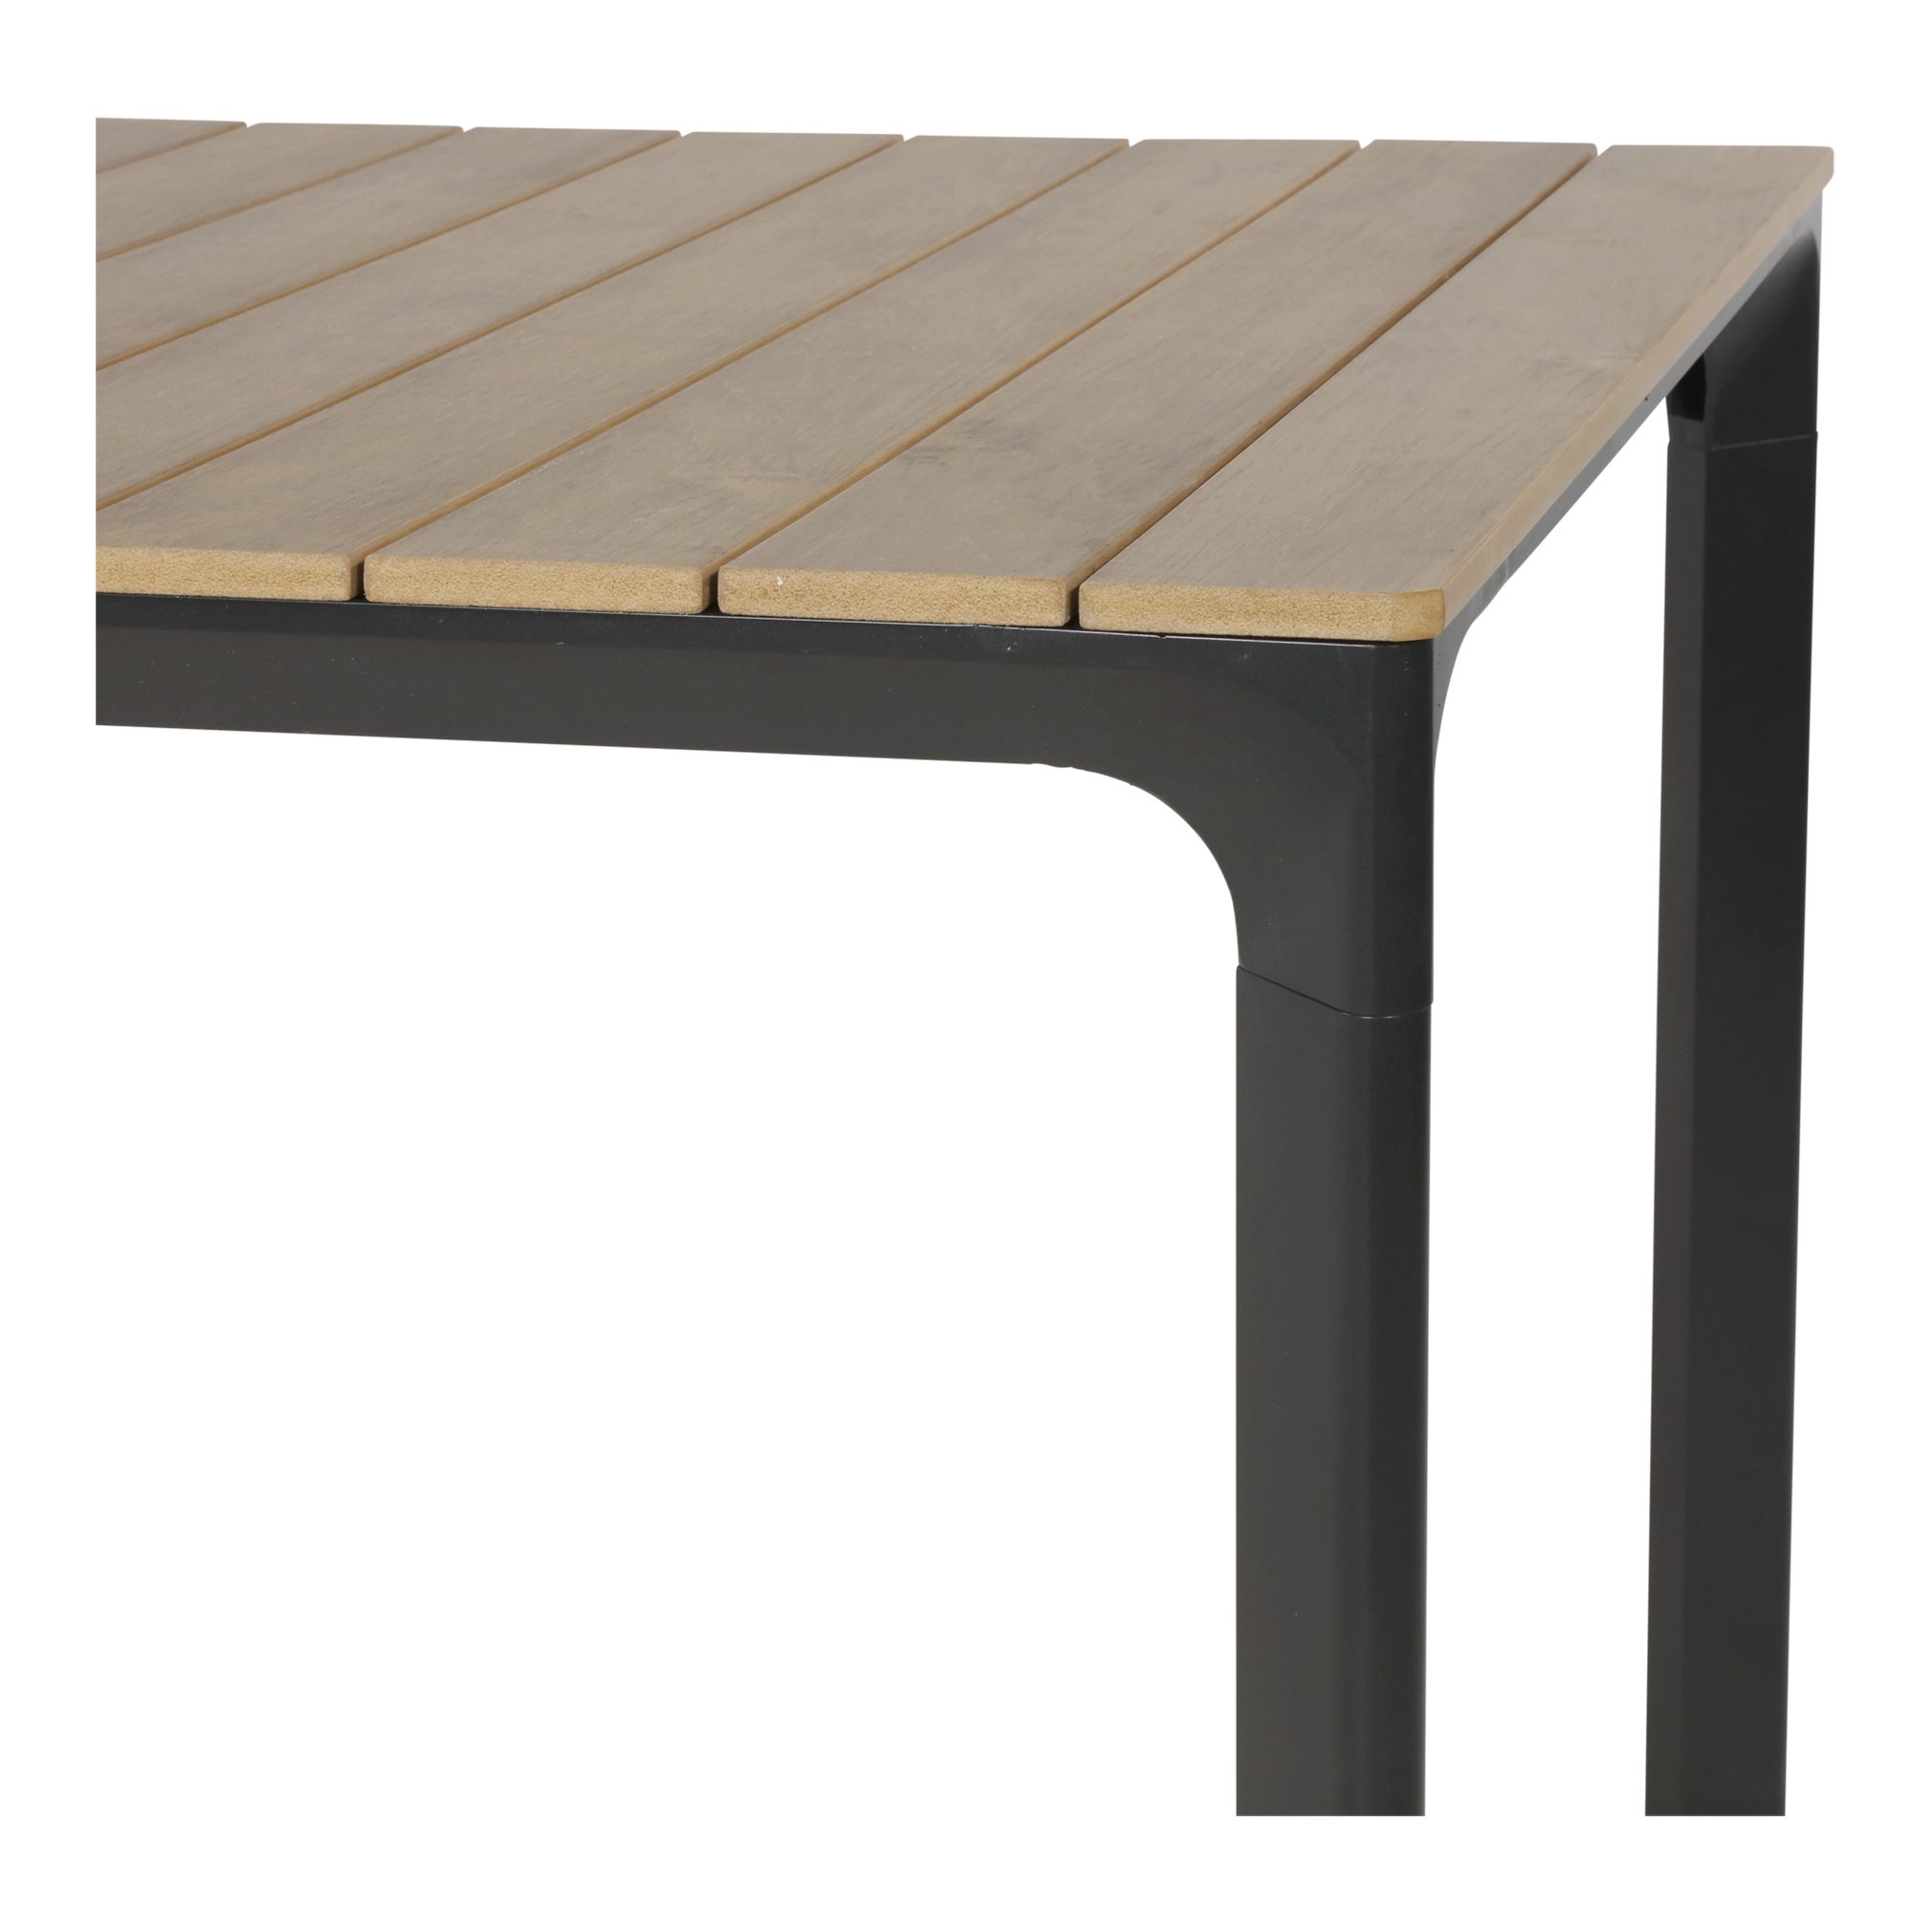 Gartentisch 90x90cm anthrazit braun Living Aluminium Beistelltisch Lesli Gartentisch